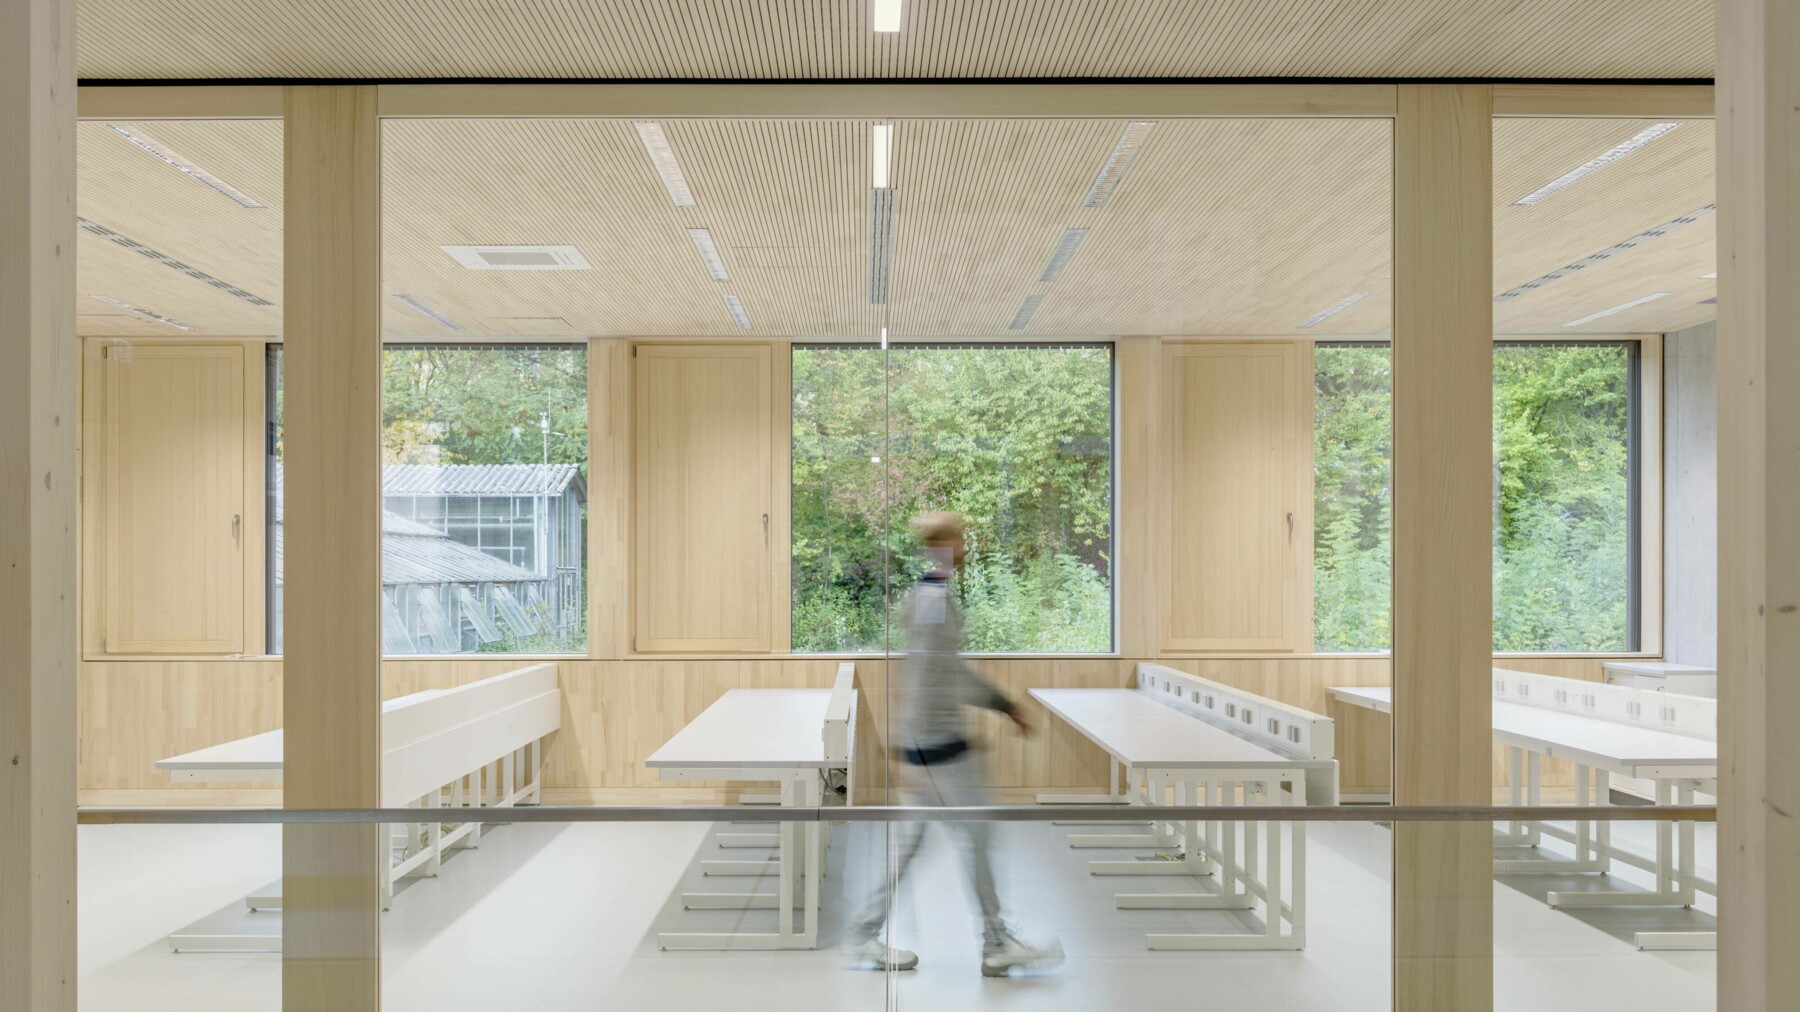 Das gesamte Innenleben des Neubaus wird dominiert durch die riesigen Fensterfronten, die von allen Seiten Licht in die Räume lassen, so auch in dem in helles Holz verkleideten Seminarraum.